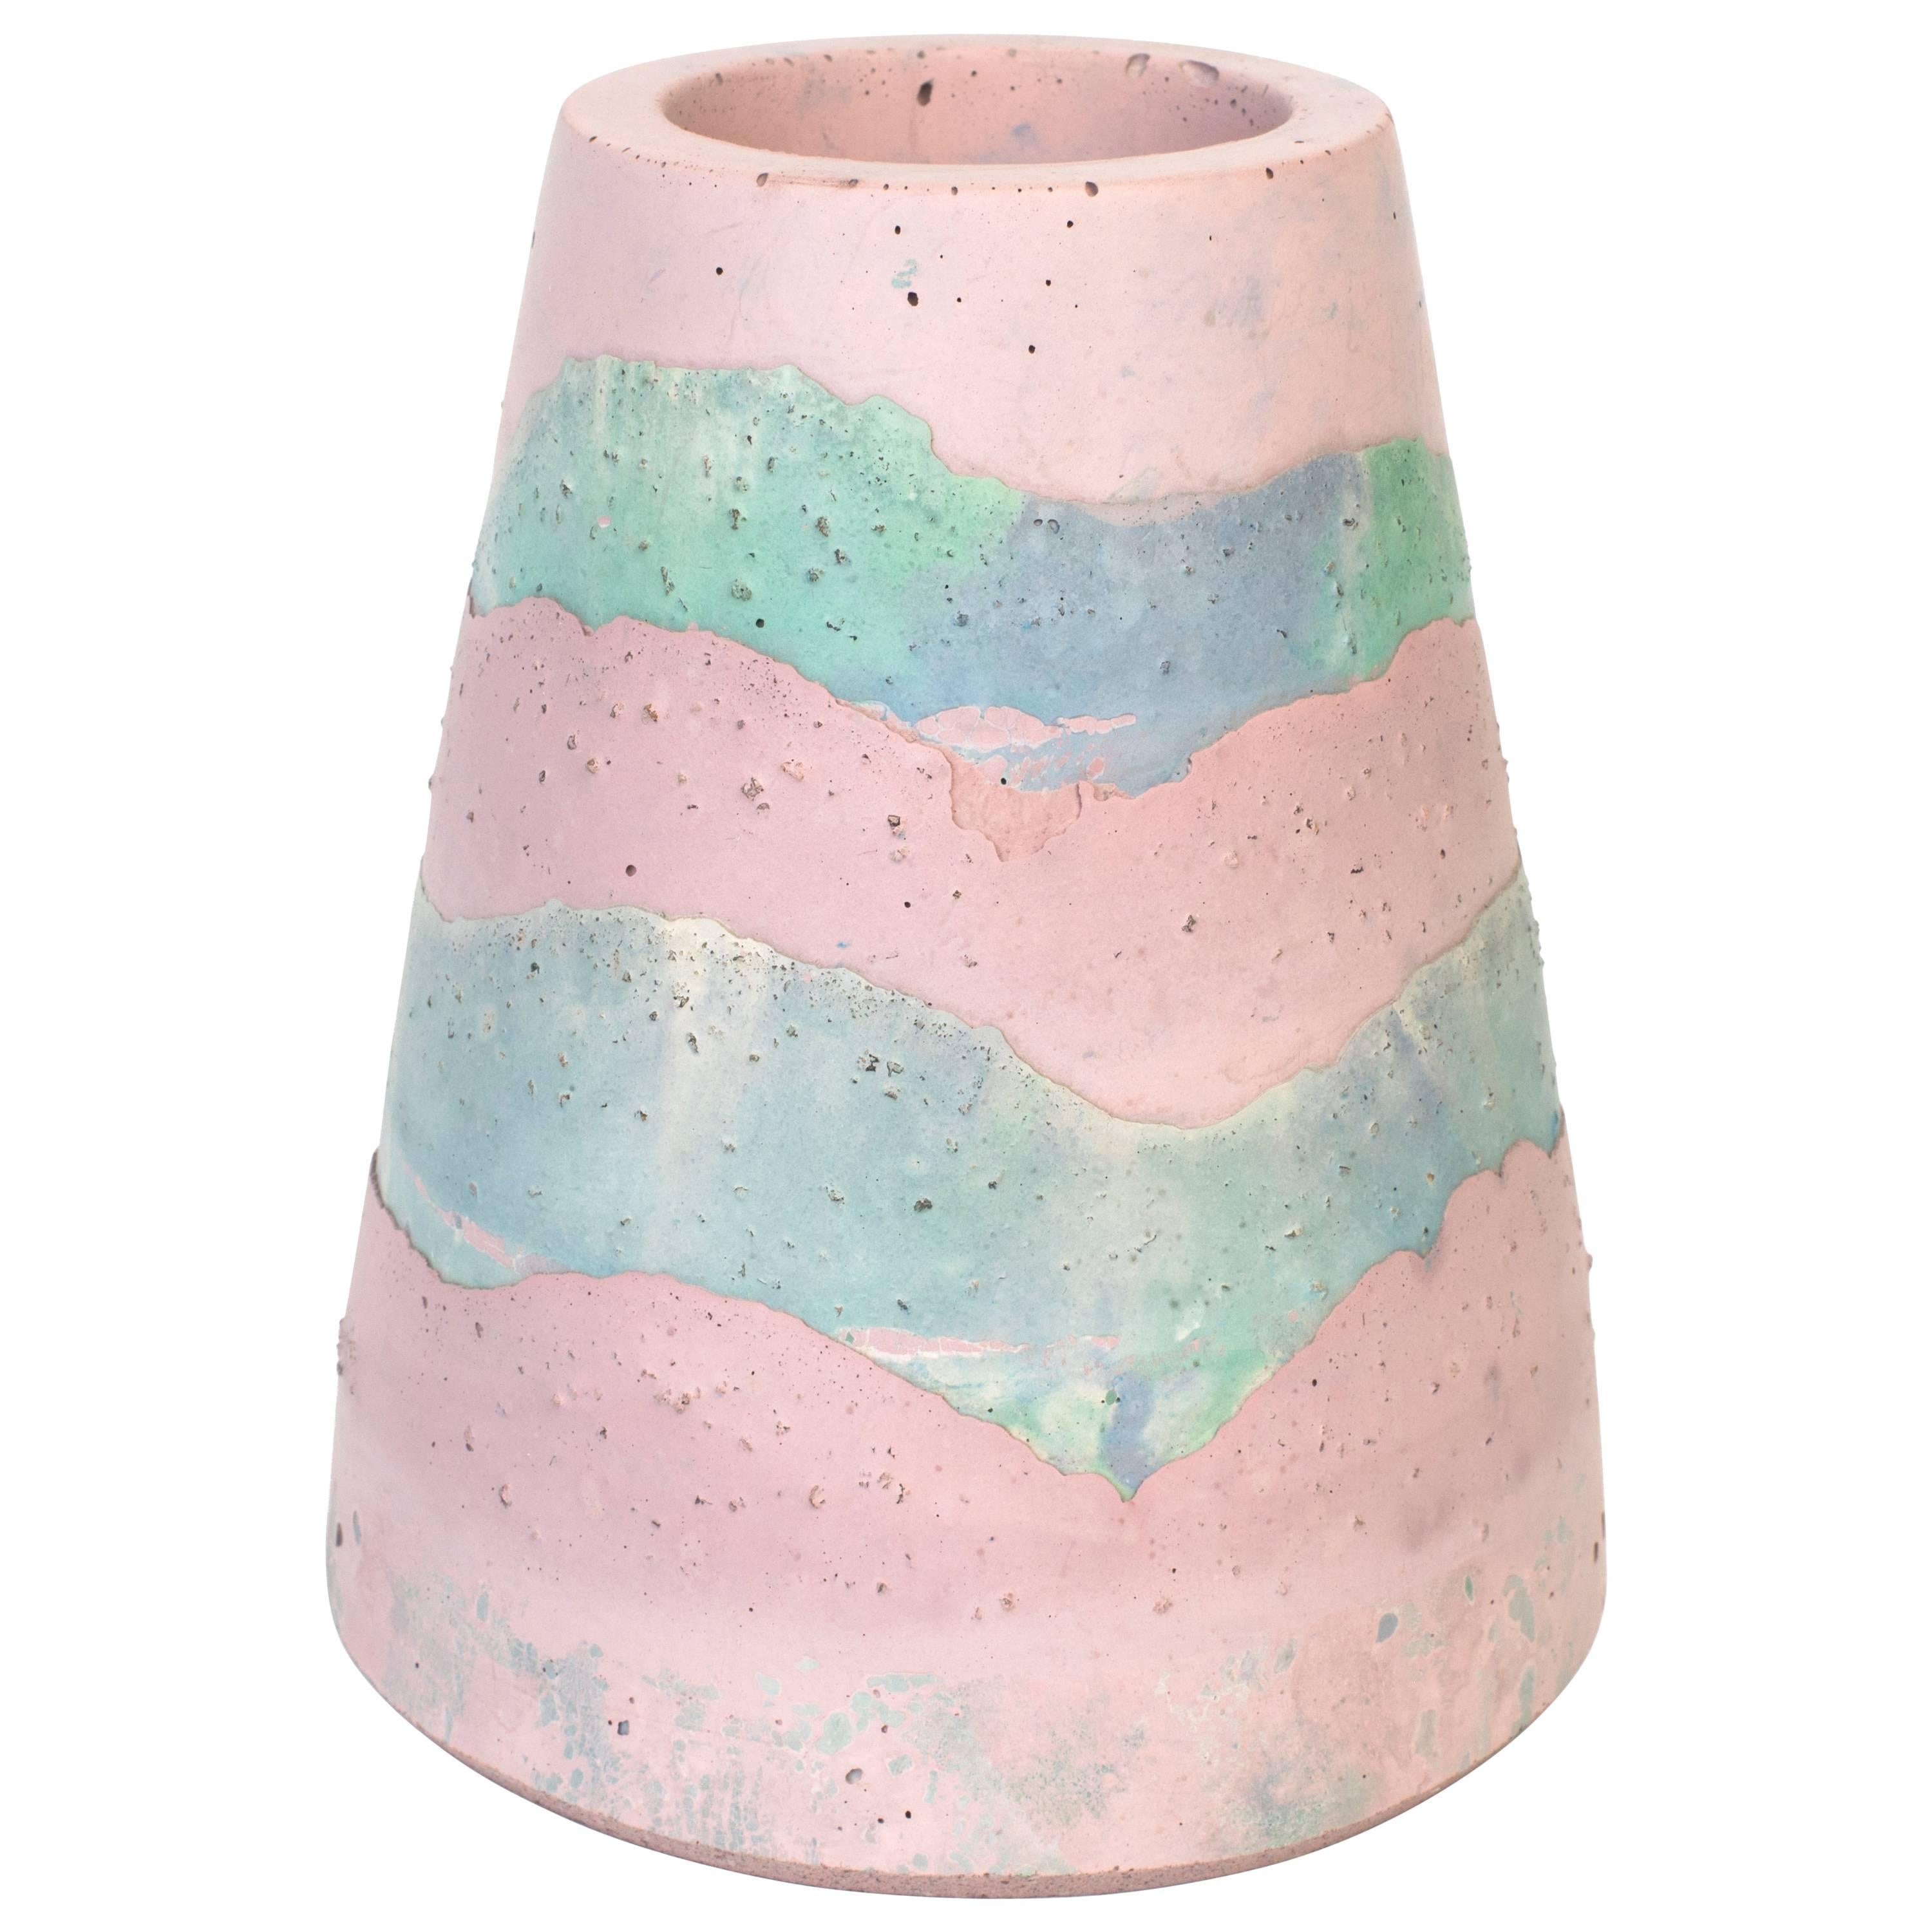 Vesta Concrete Vase in Detritus Pattern, Handmade Organic Modern Vessel In Stock For Sale